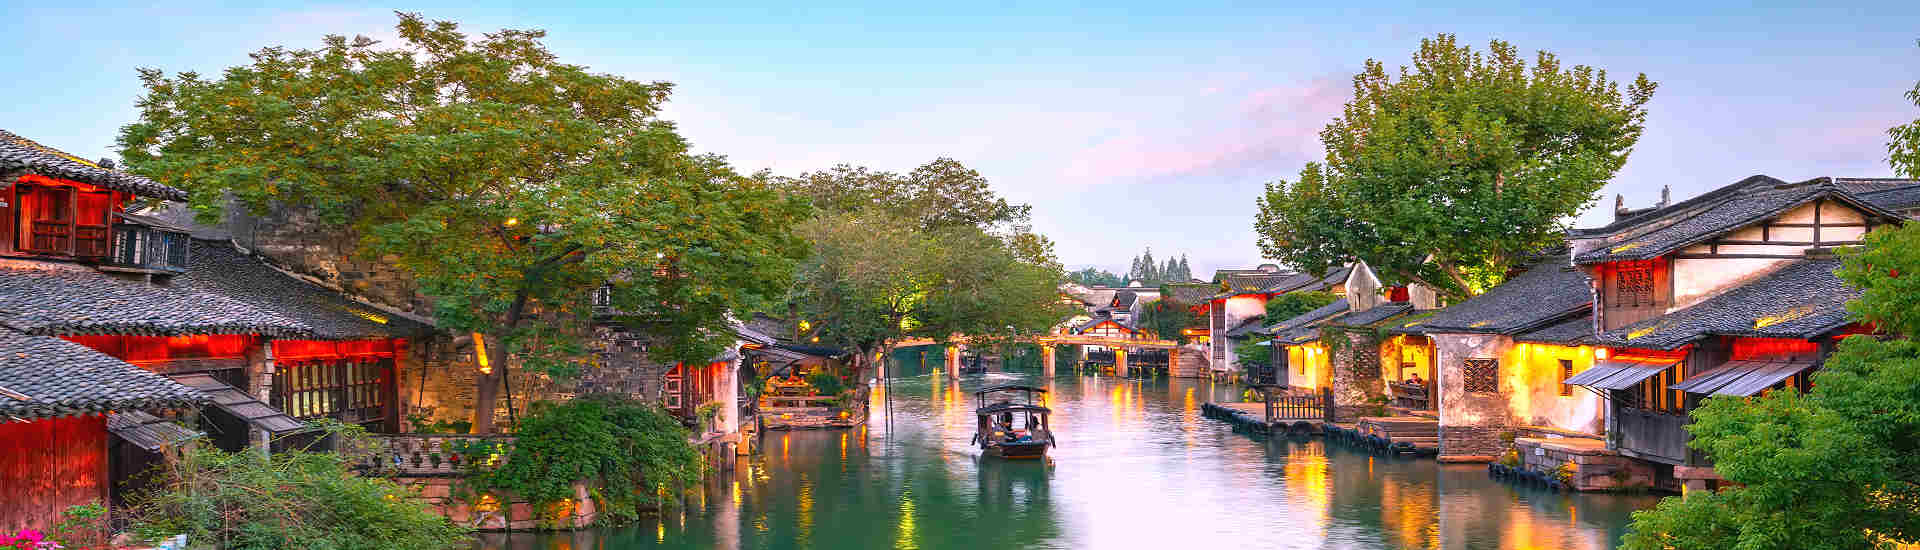 Bild eines malerischen Wasserdorfes in China – Wuzhen, ein Ort voller Charme und Geschichte